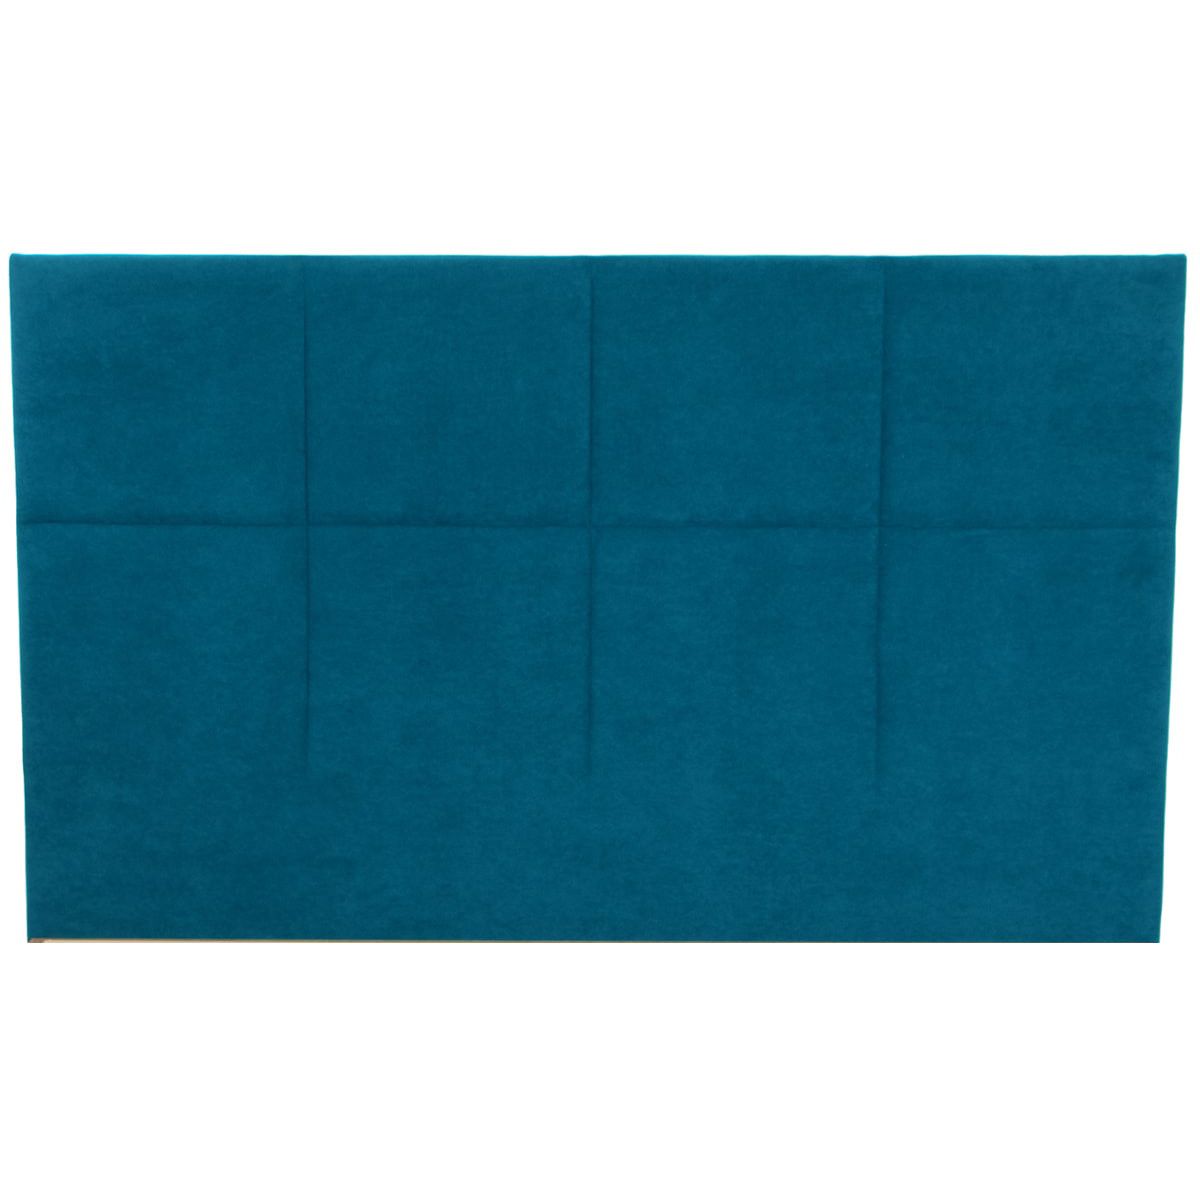 HOMIFAB Tête de lit capitonnée en velours bleu canard 160 cm - Emy